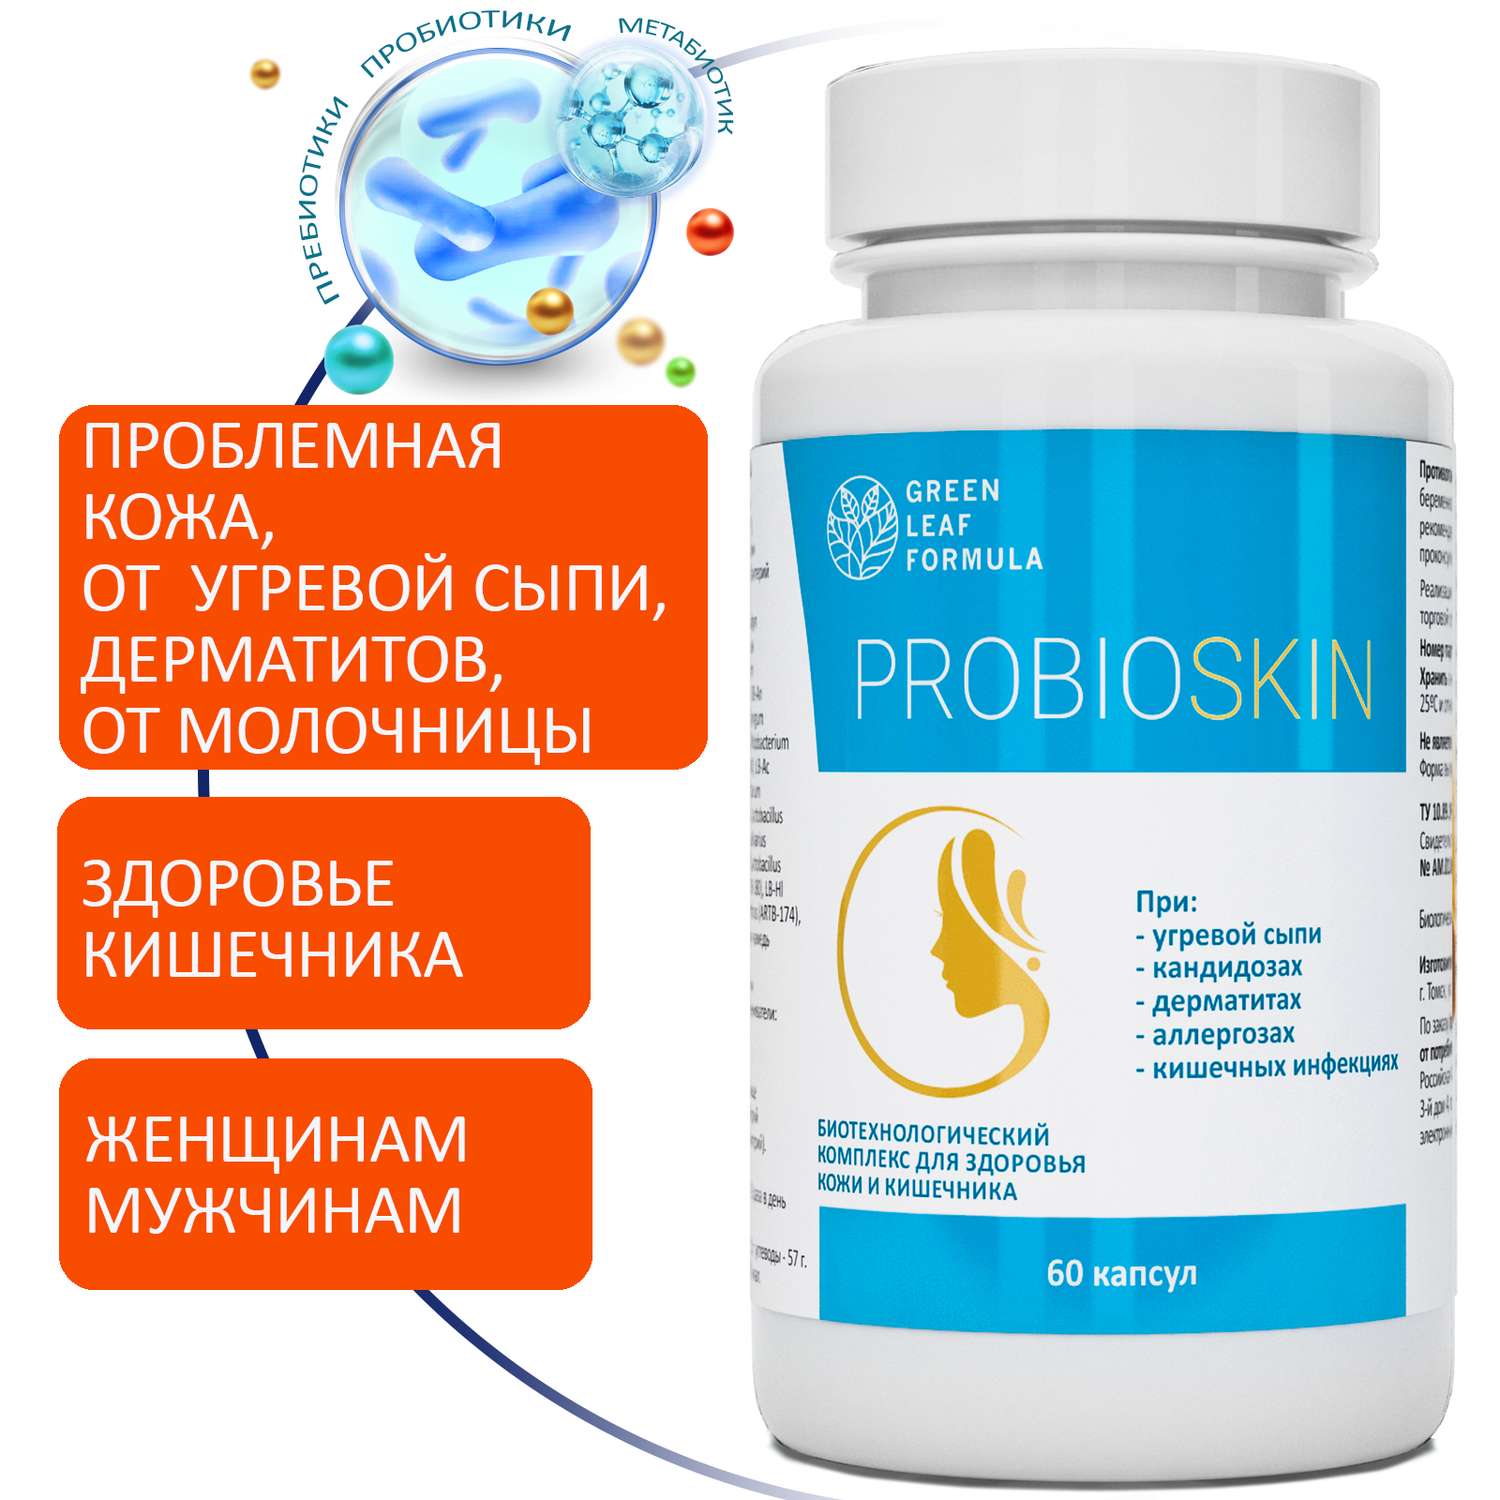 Пробиотик Green Leaf Formula инулин симбиотик для кишечника для взрослых 2 банки - фото 2